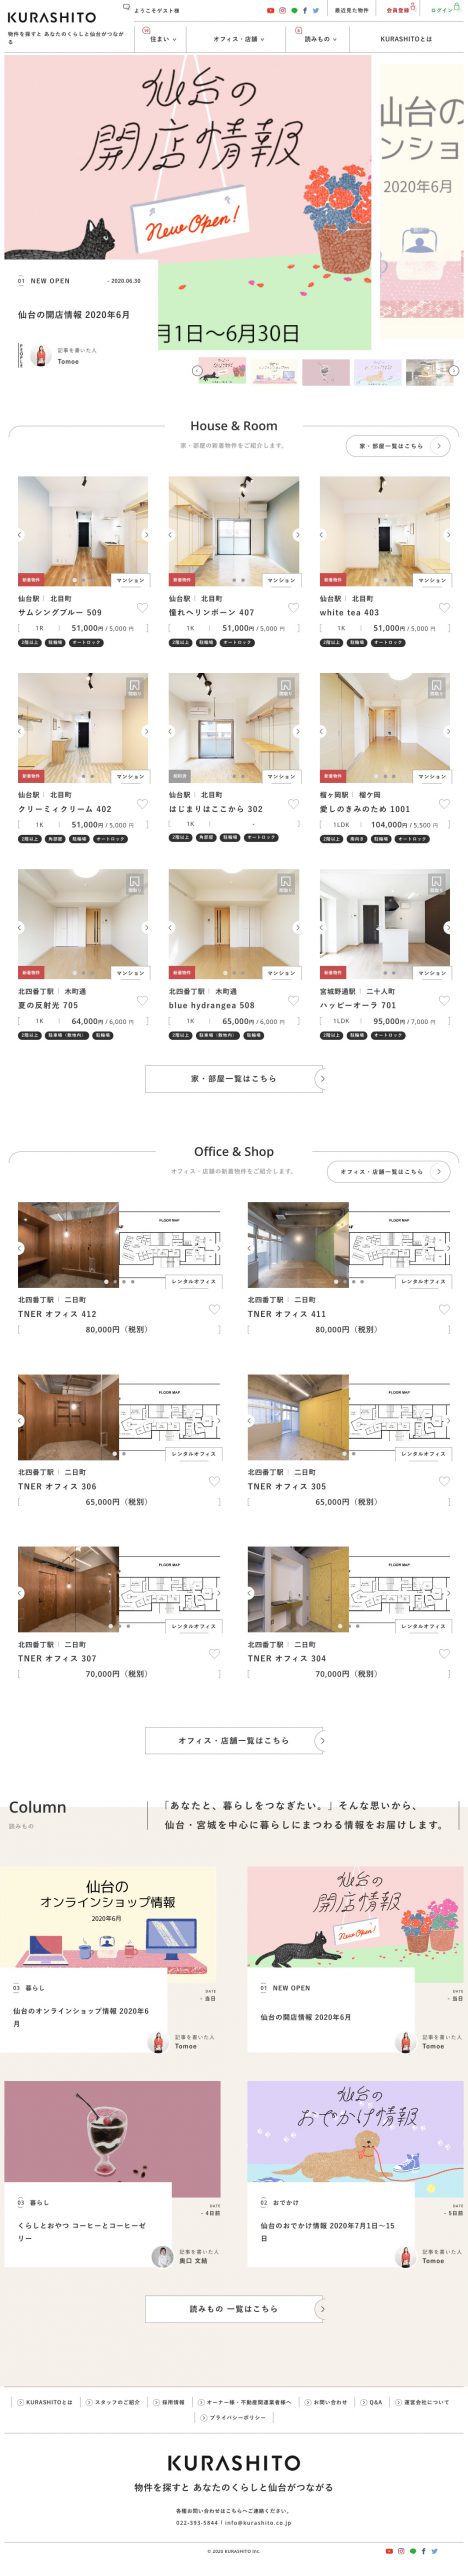 建築･不動産・建設・開発 ホームページ制作 WEBデザイン参考ギャラリー KURASHITO